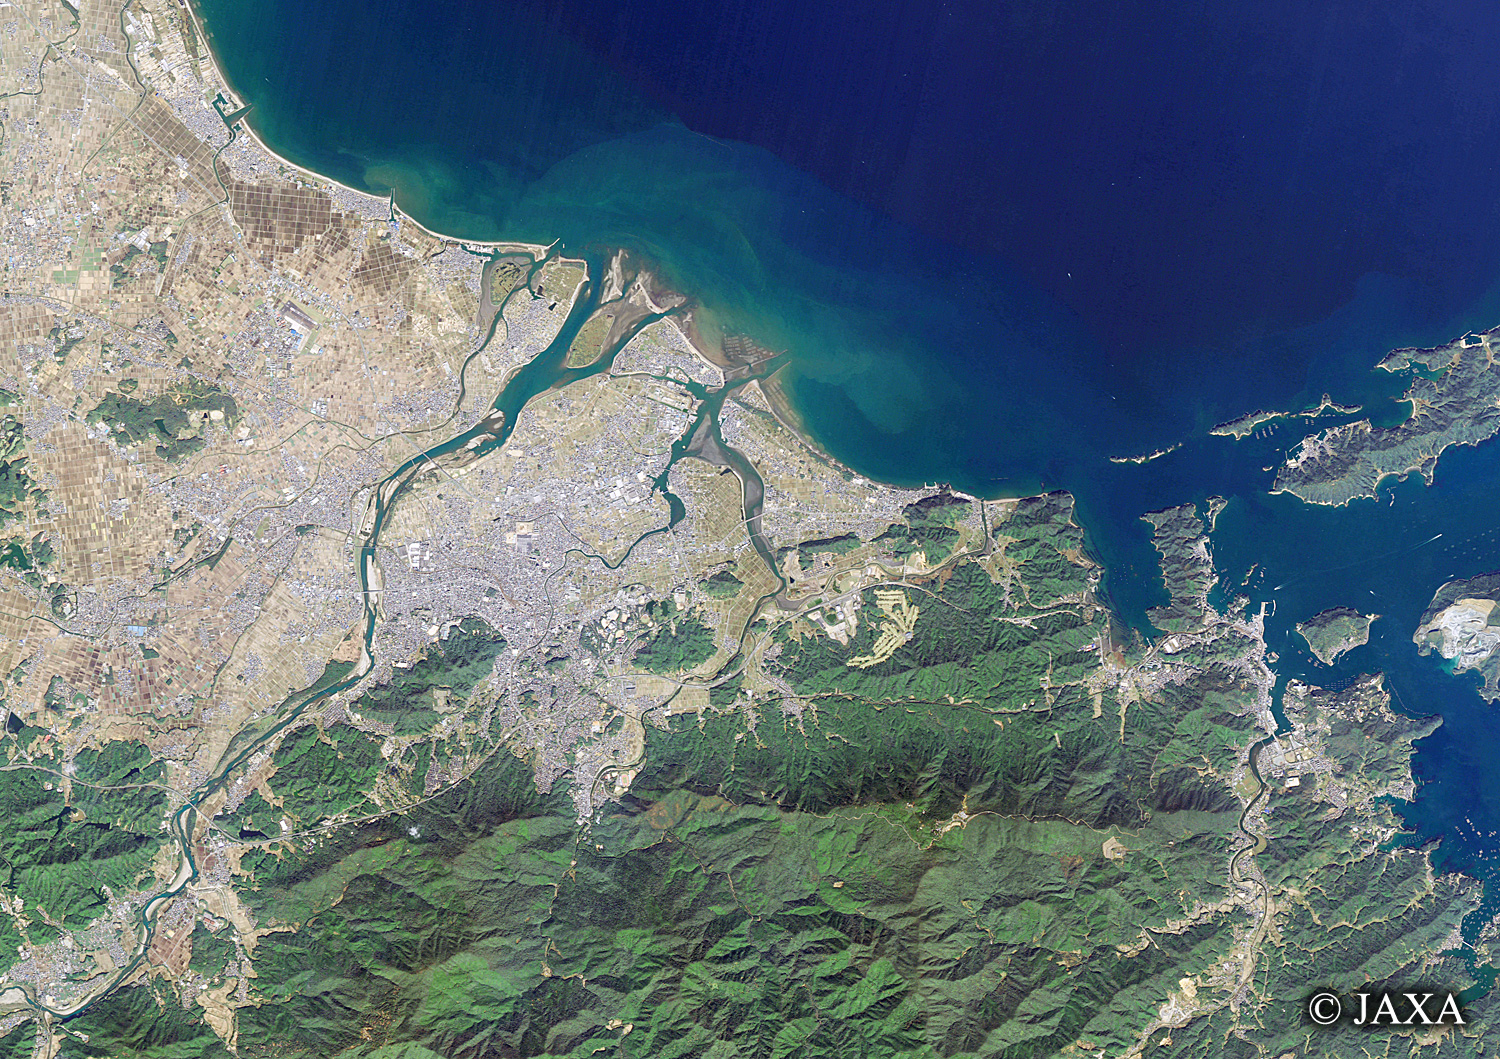 だいちから見た日本の都市 伊勢市周辺:衛星画像